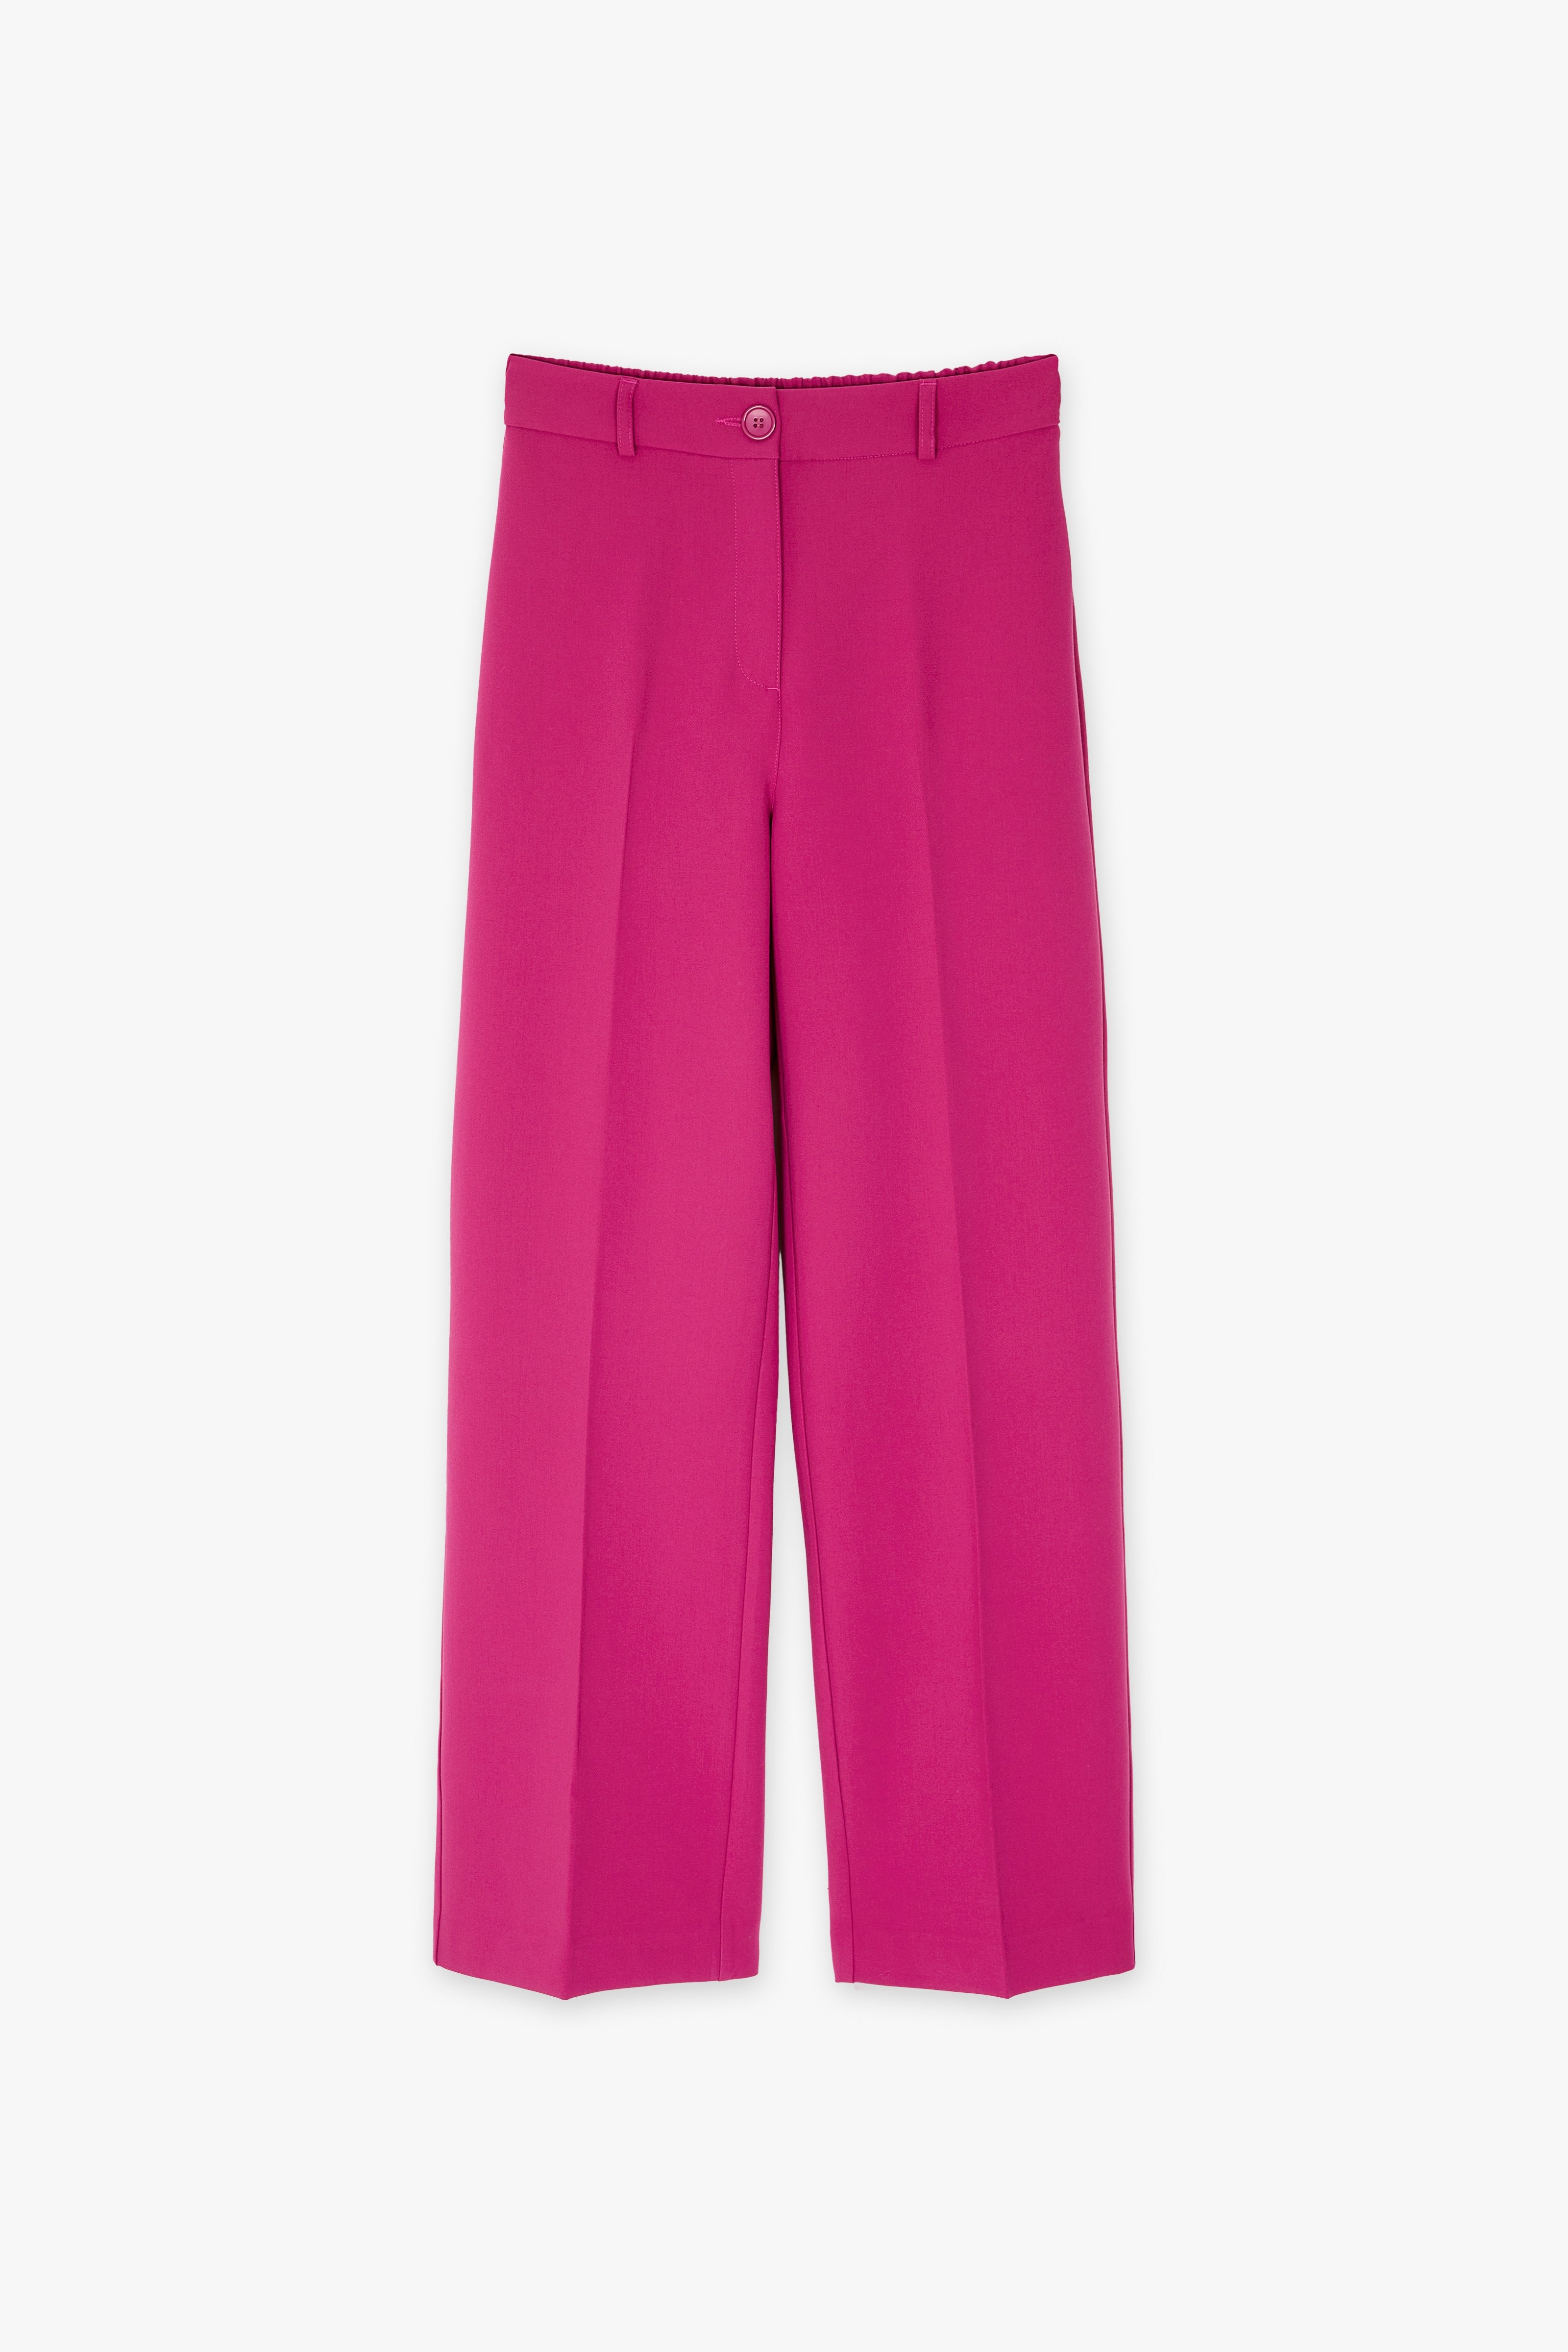 CKS Dames - THIBIS - pantalon long - rose foncé